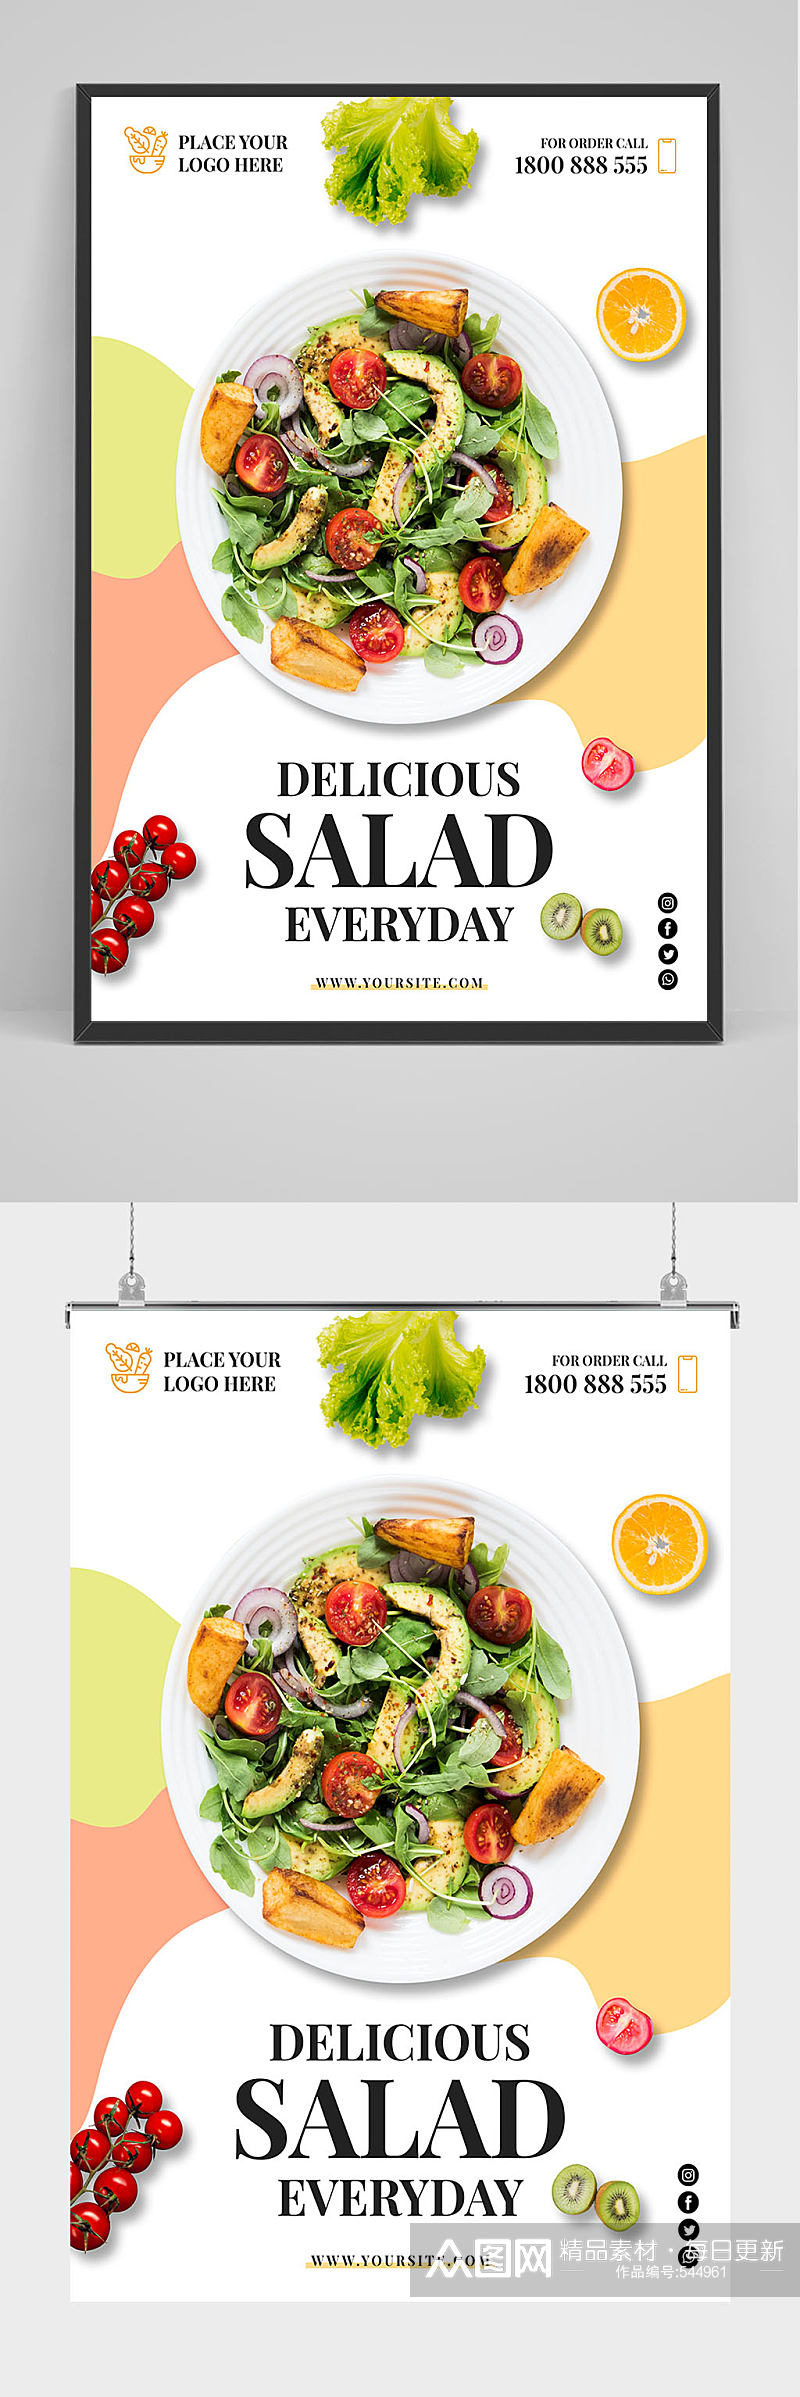 精品创意蔬菜沙拉海报设计素材